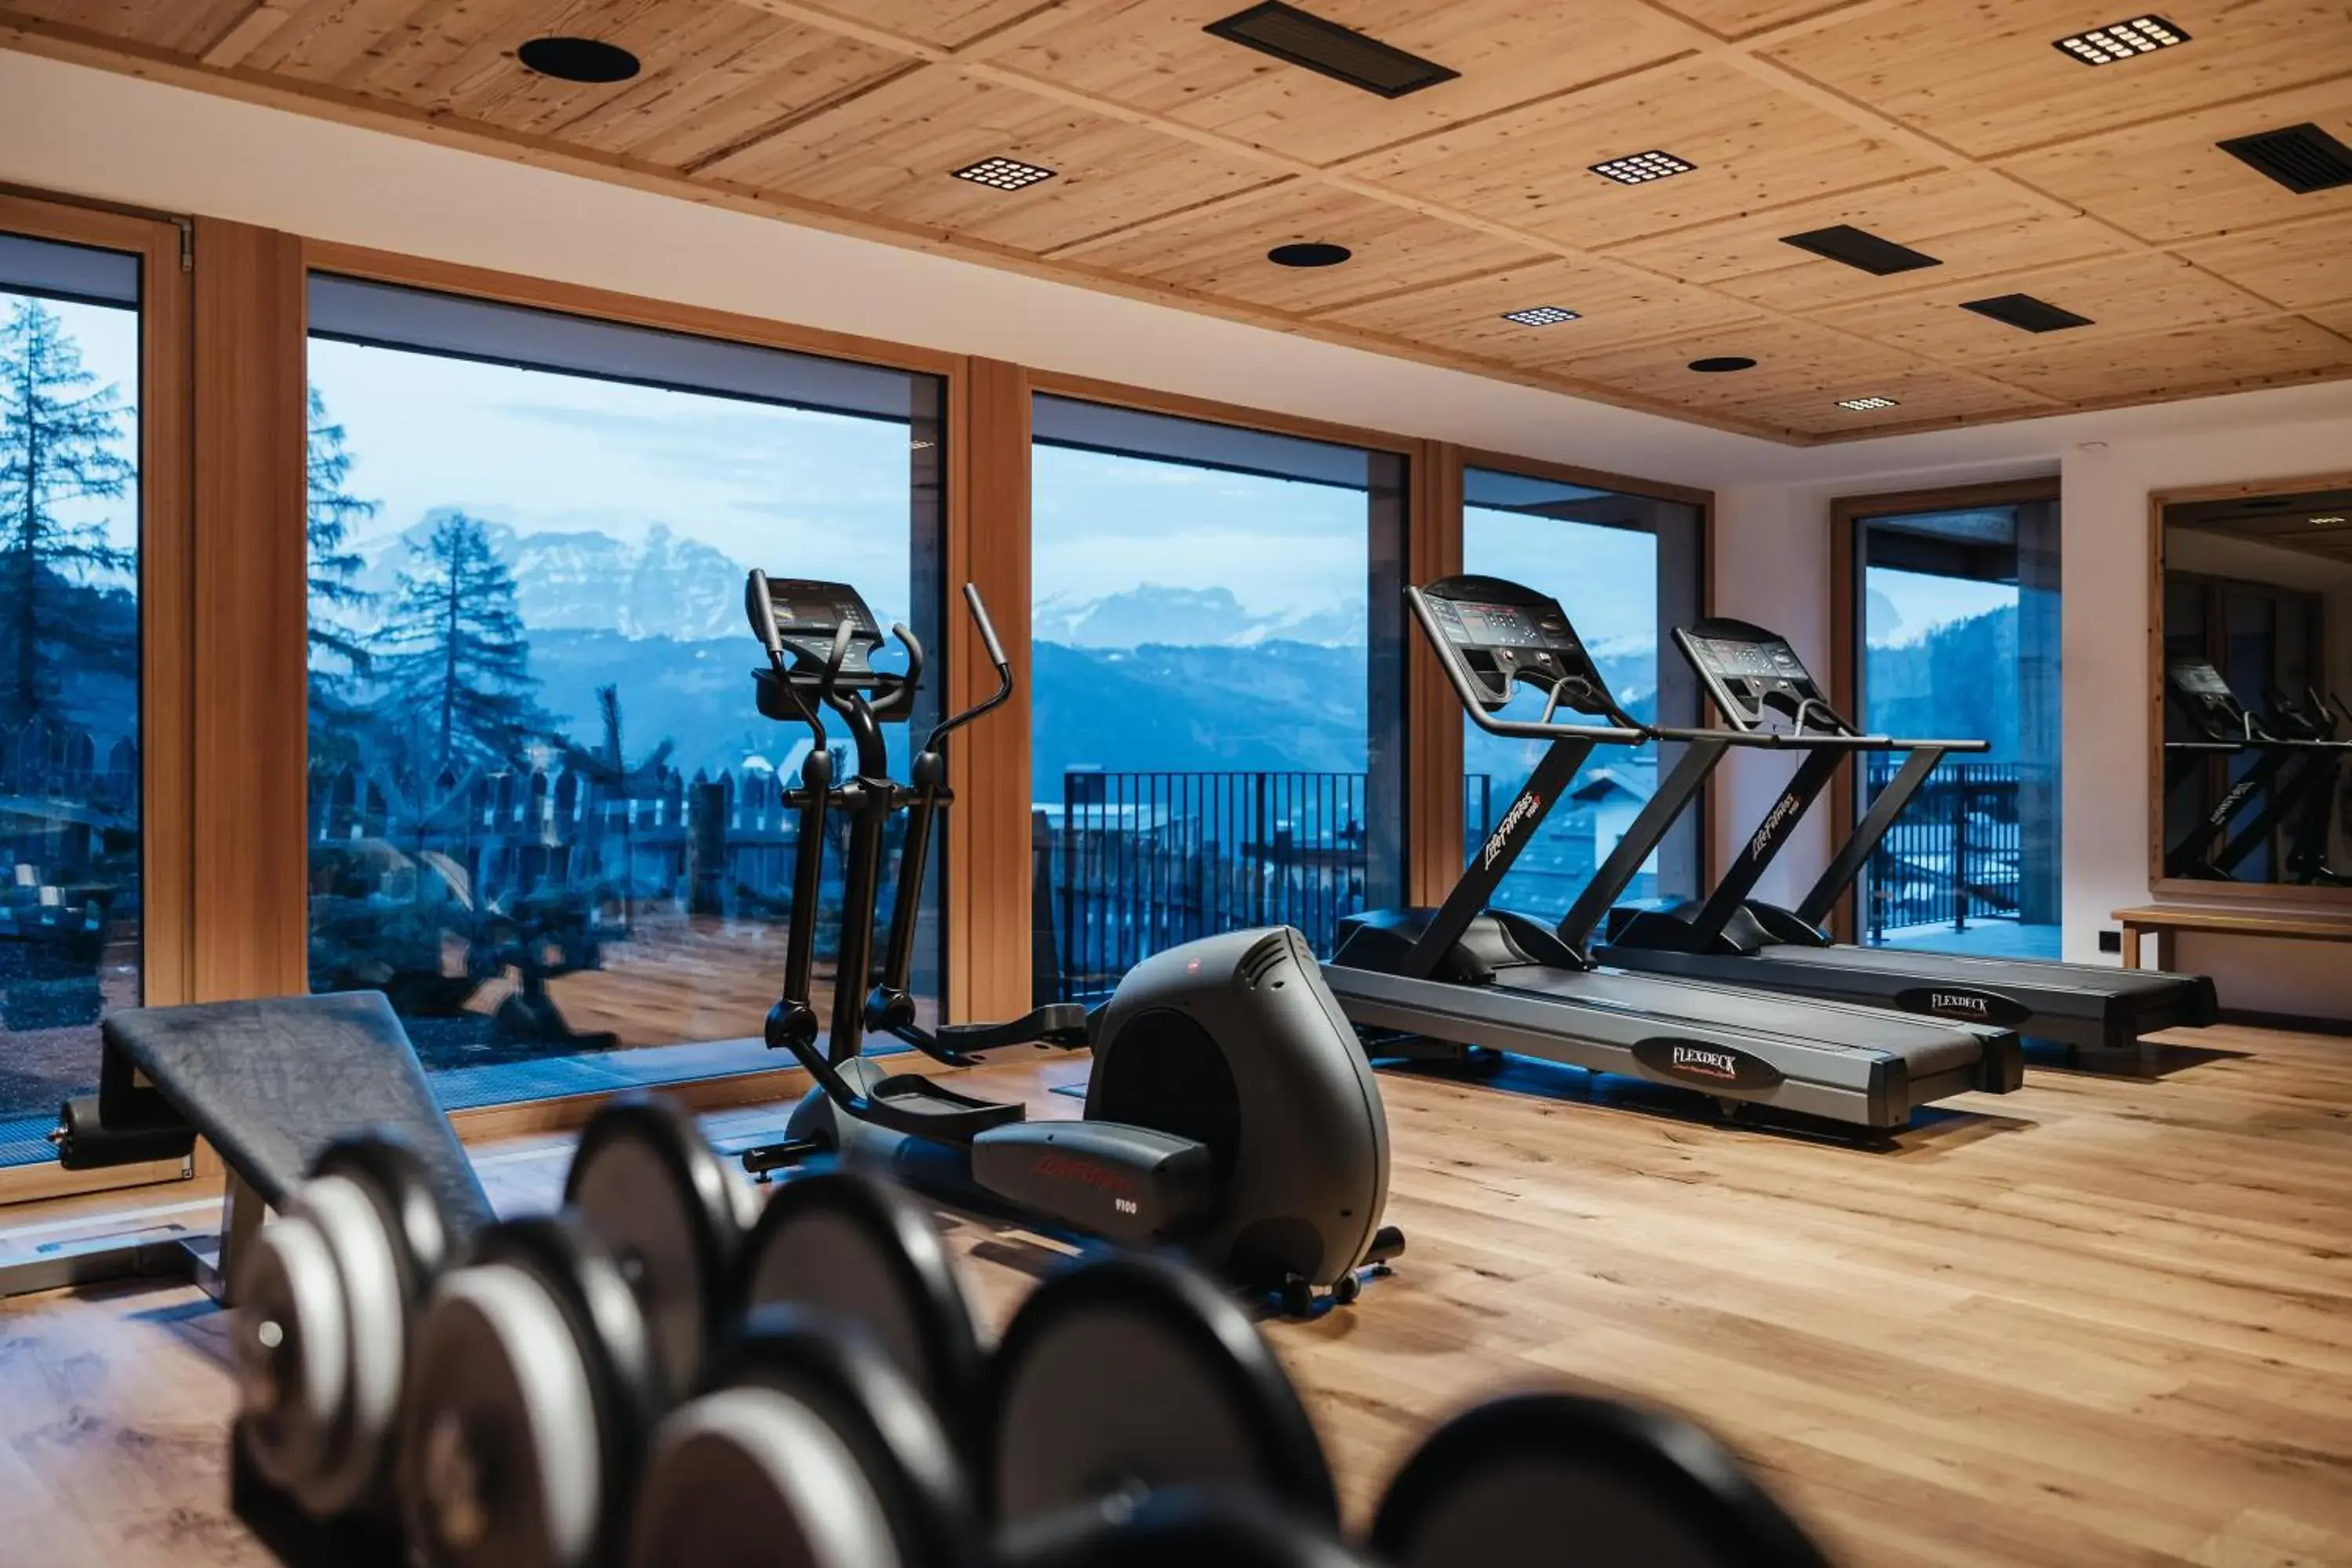 Fitness centre/facilities in Kolfuschgerhof Mountain Resort